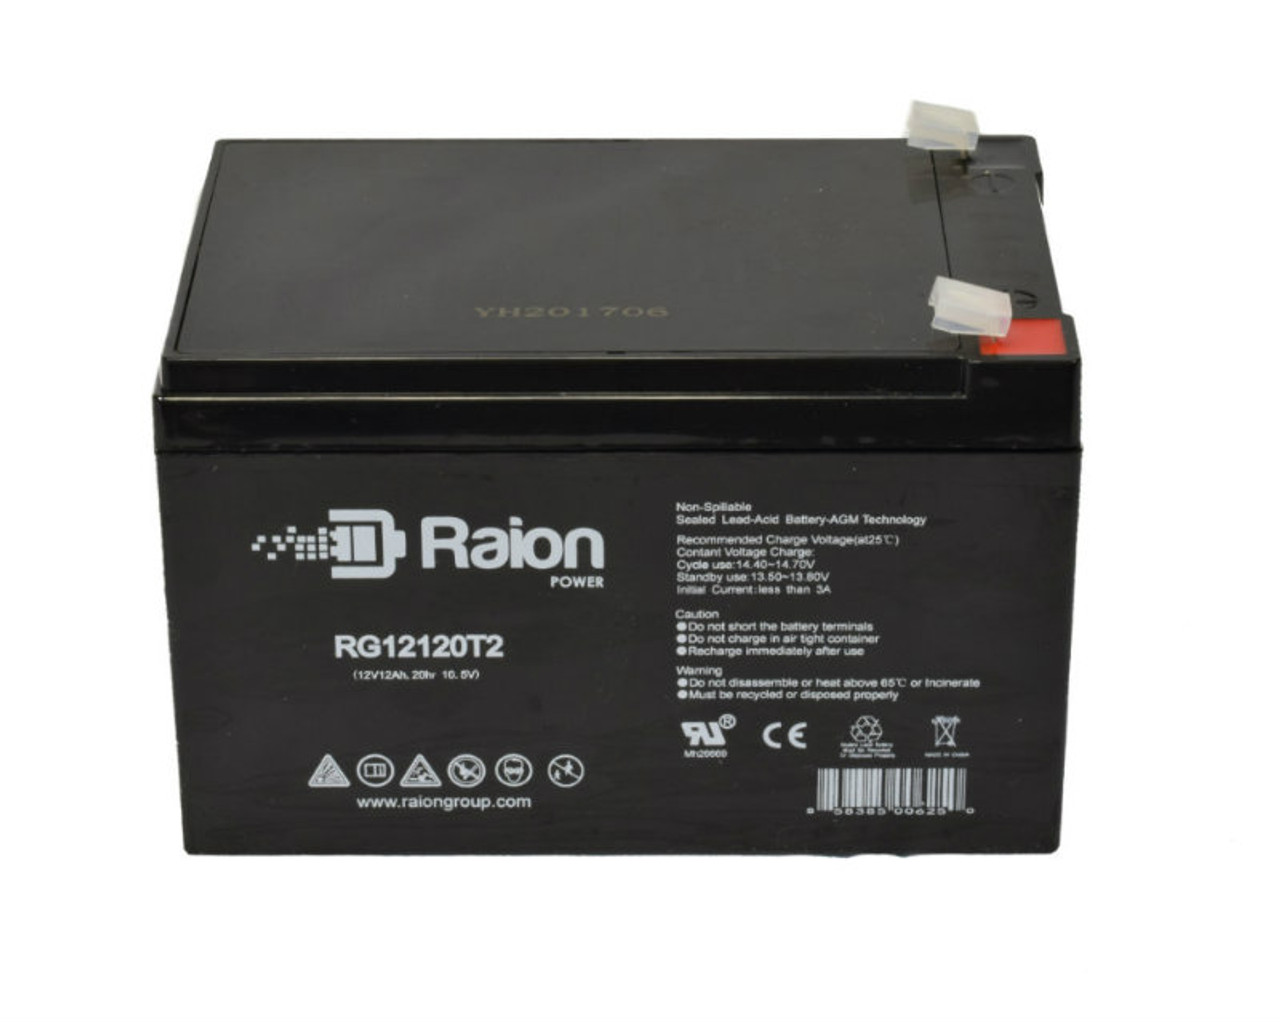 Raion Power RG12120T2 SLA Battery for ELK ELK-12120